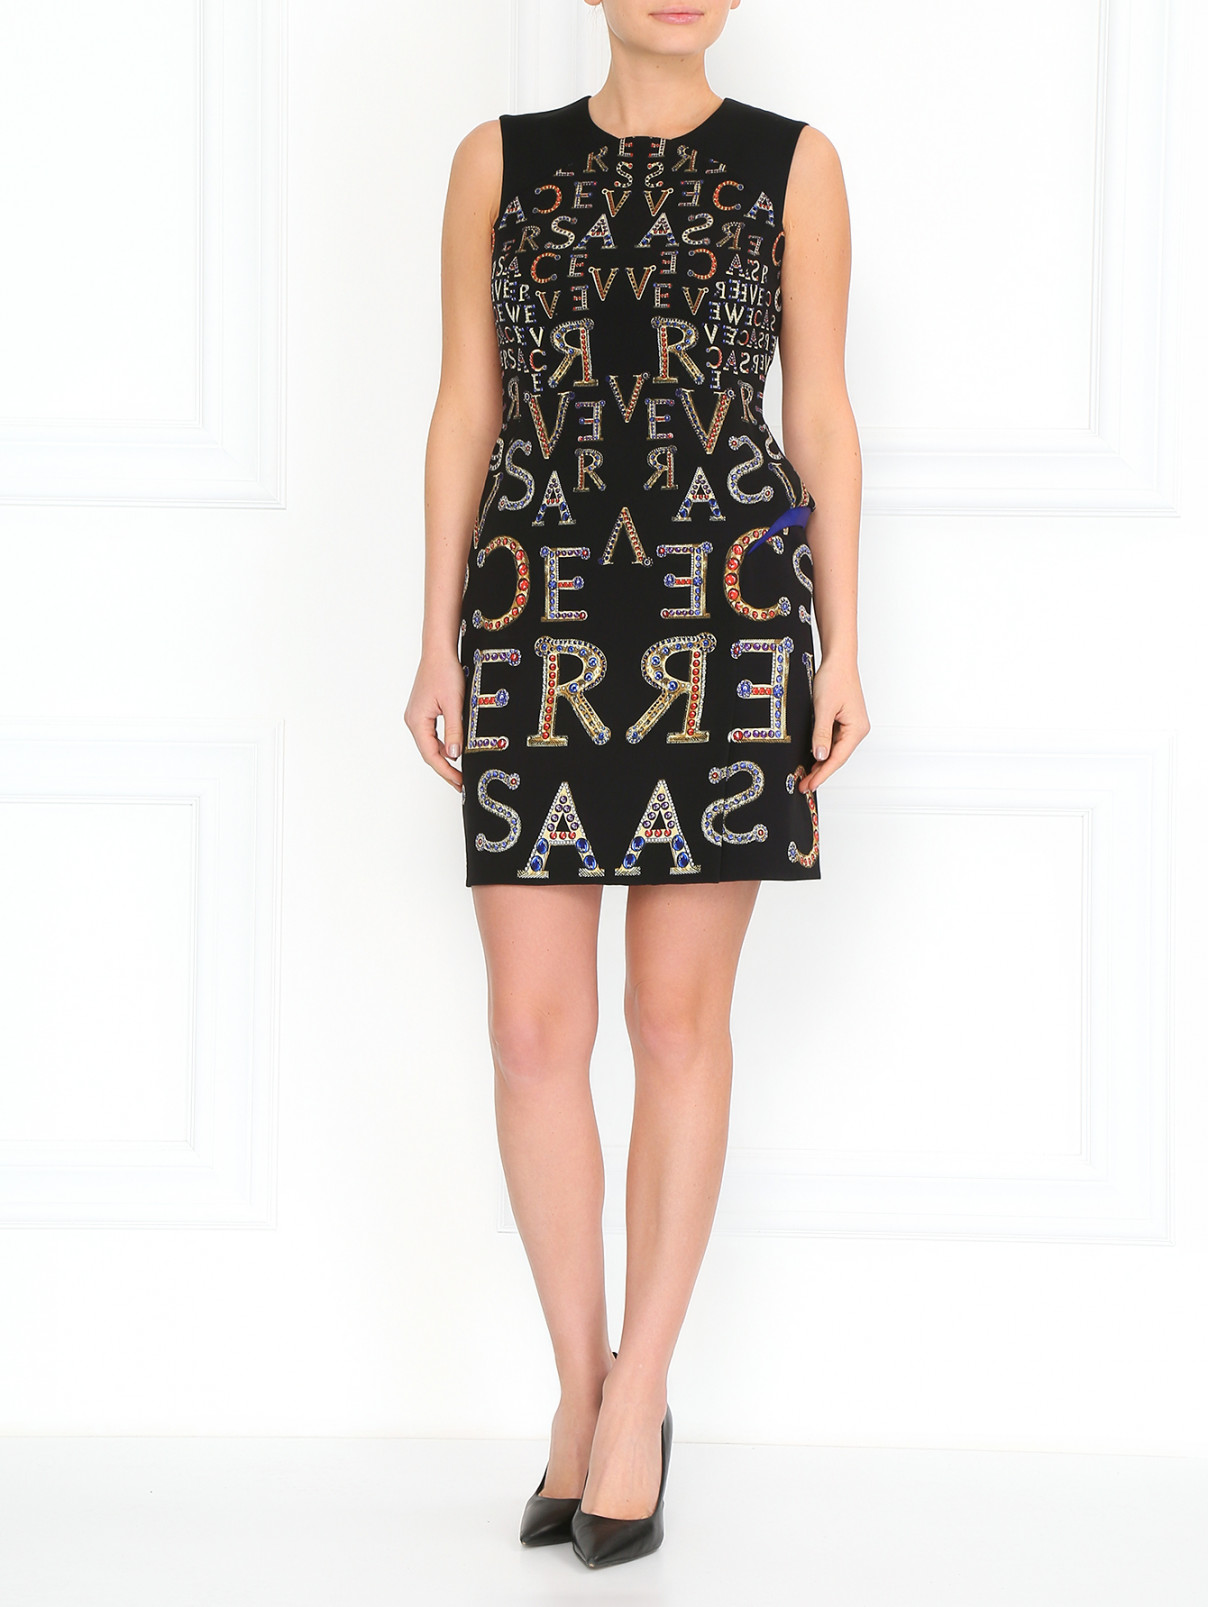 Платье-футляр с принтом Versace 1969  –  Модель Общий вид  – Цвет:  Черный